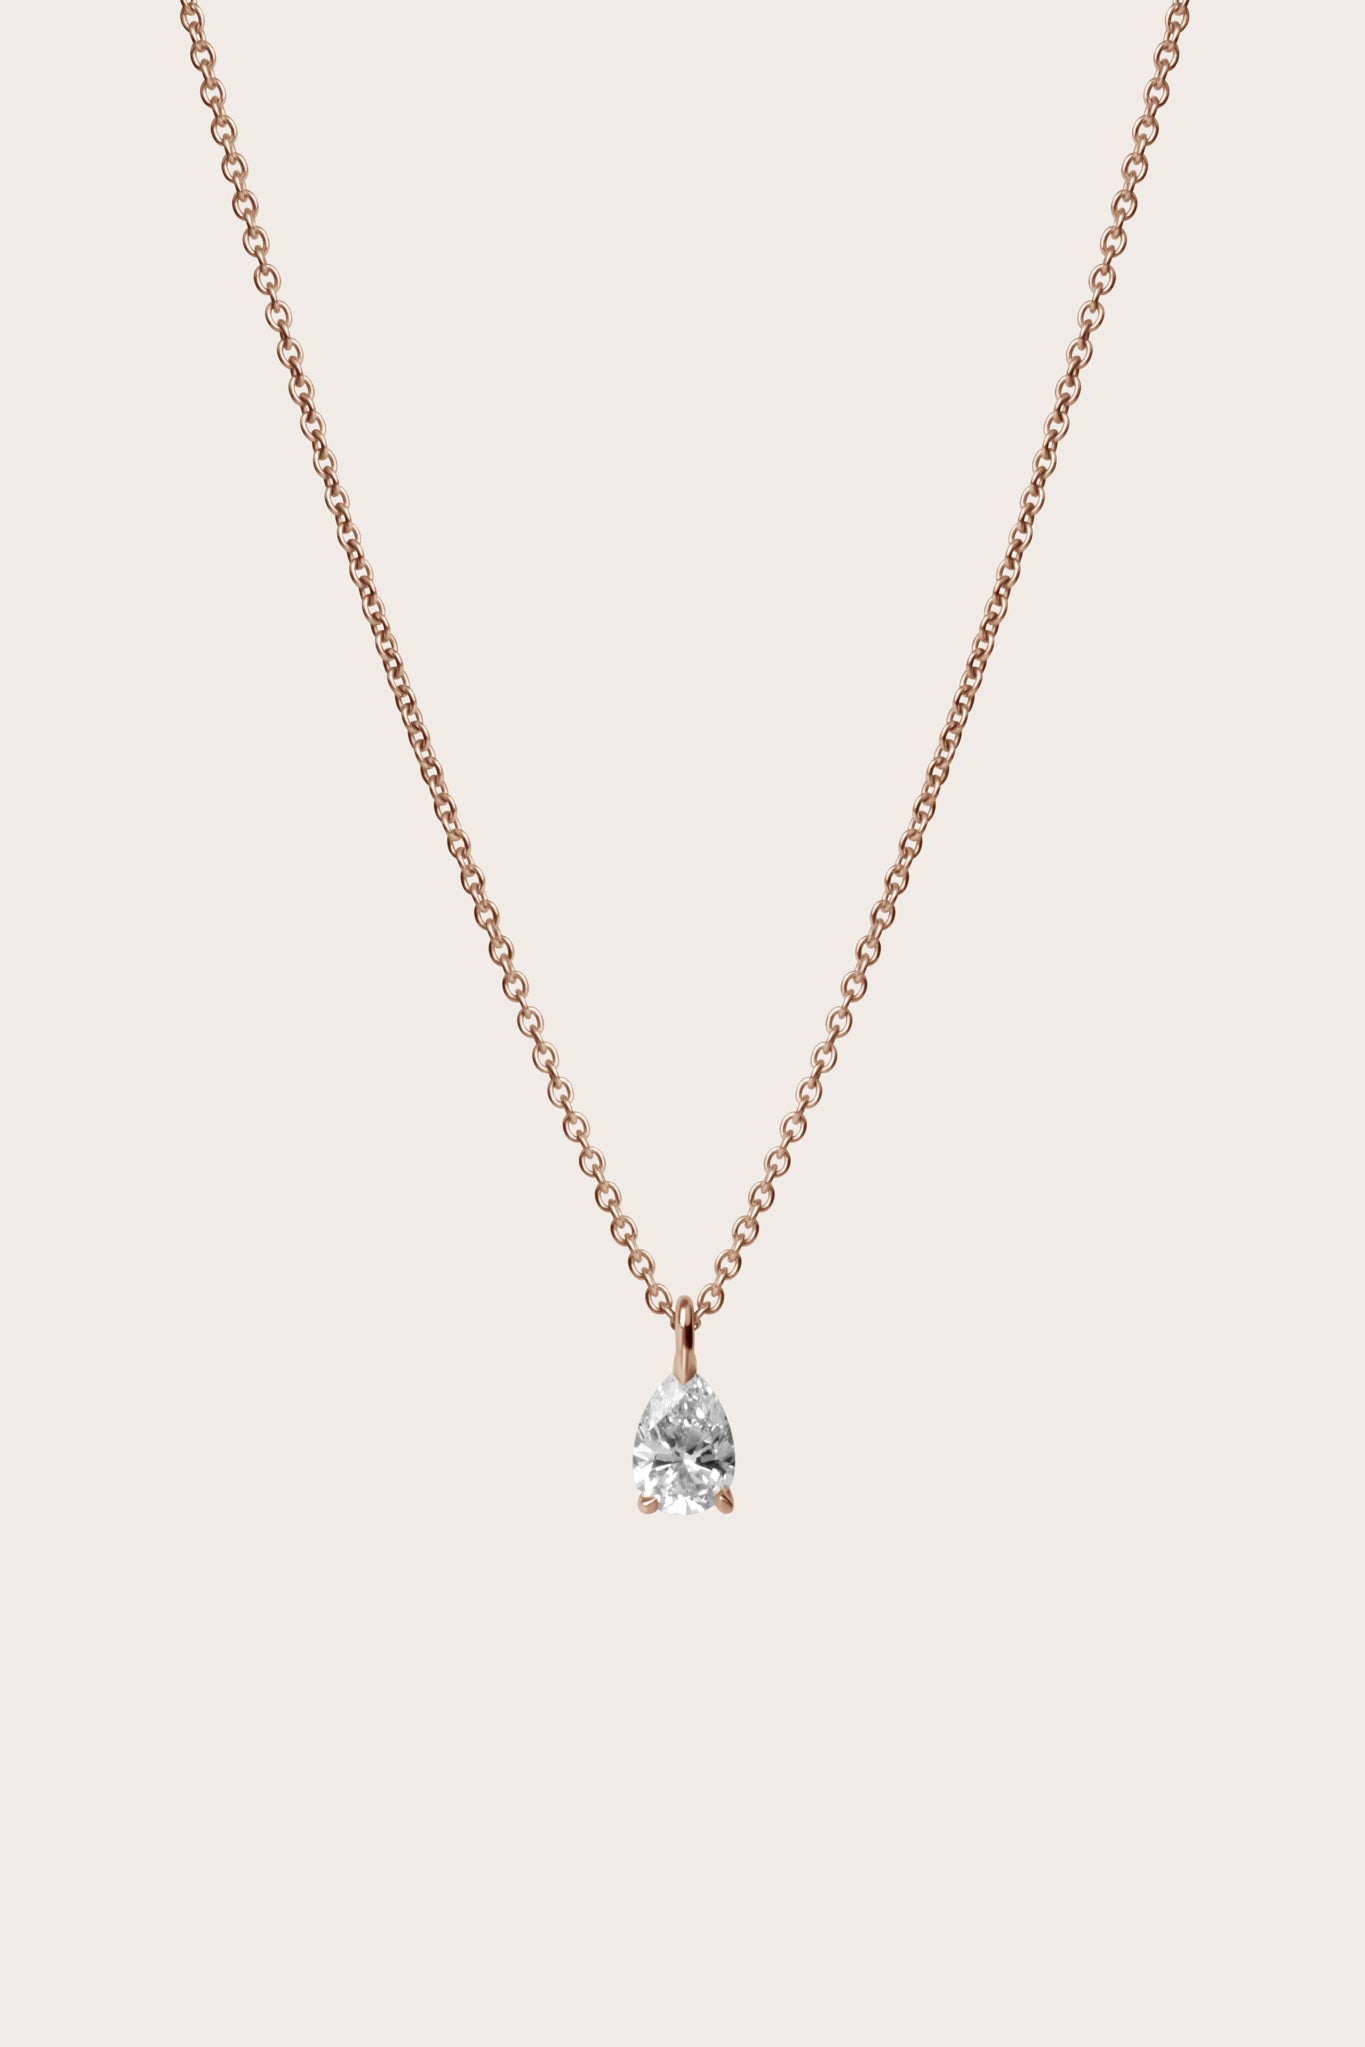 Pear Diamond Pendant Necklace